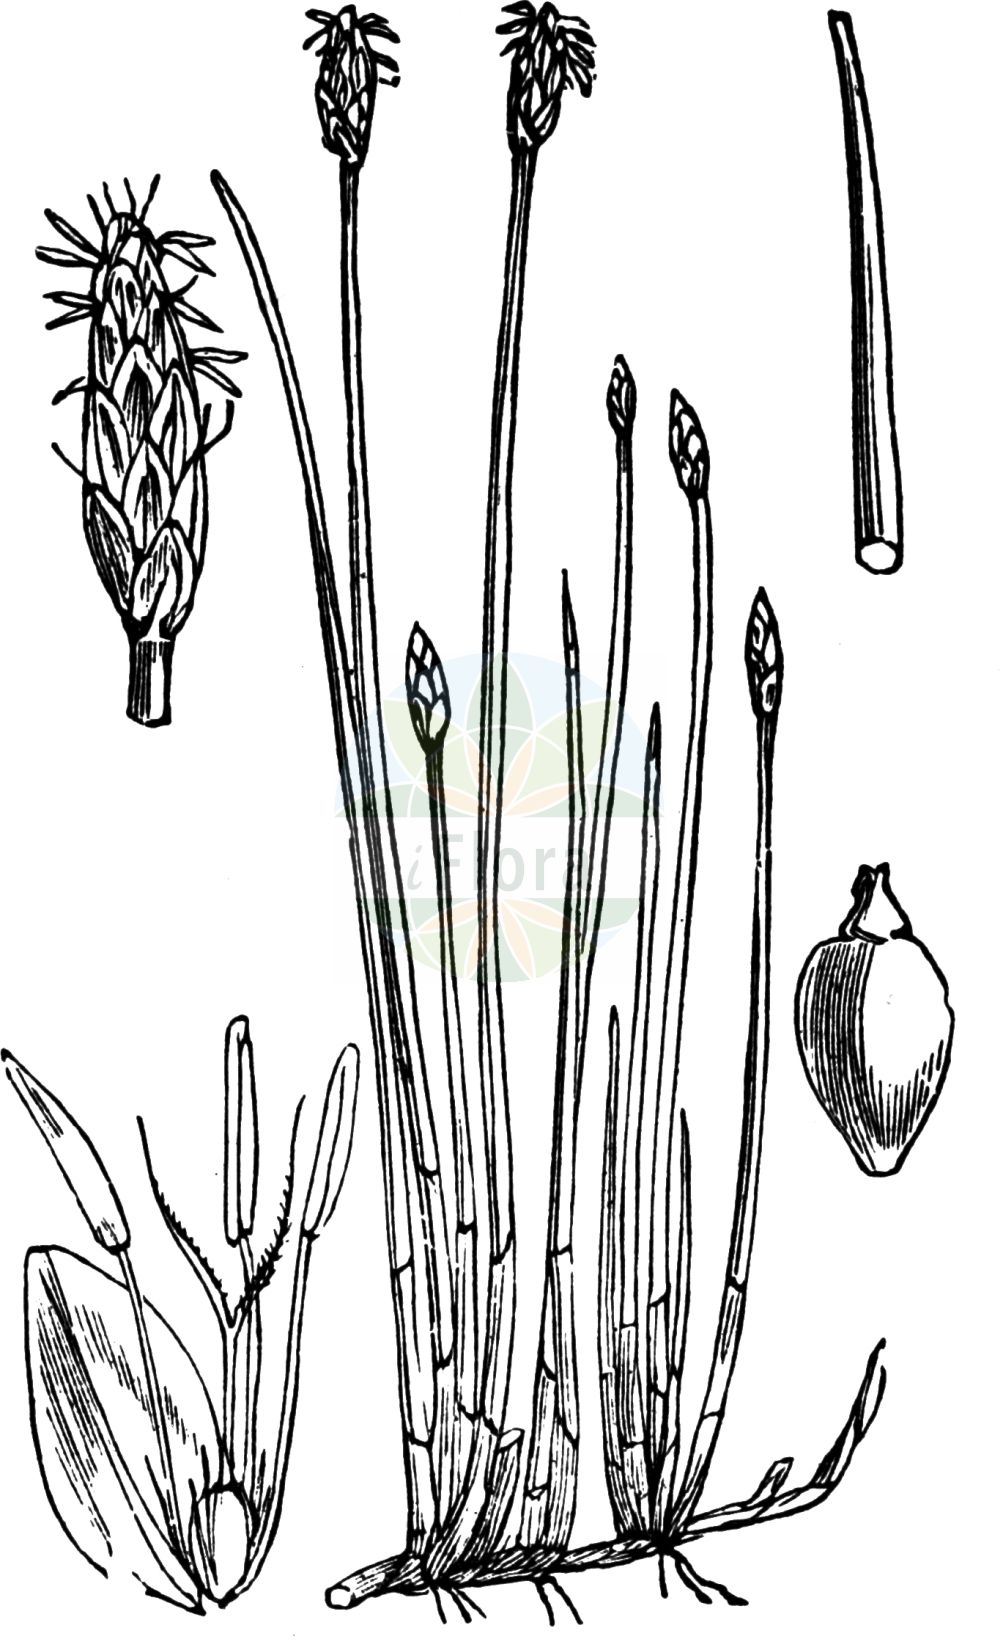 Historische Abbildung von Eleocharis palustris agg. (Gewöhnliche Sumpfbinse - Common Spike-rush). Das Bild zeigt Blatt, Bluete, Frucht und Same. ---- Historical Drawing of Eleocharis palustris agg. (Gewöhnliche Sumpfbinse - Common Spike-rush). The image is showing leaf, flower, fruit and seed.(Eleocharis palustris agg.,Gewöhnliche Sumpfbinse,Common Spike-rush,Gewoehnliche Sumpfbinse,Gewoehnliche Sumpfbinse,Grossfruechtige Gewoehnliche Sumpfbinse,Kleinfruechtige Gewoehnliche Sumpfbinse,Common Spike-rush,Eleocharis,Sumpfbinse,Spikerush,Cyperaceae,Sauergräser,Sedge family,Blatt,Bluete,Frucht,Same,leaf,flower,fruit,seed,Fitch et al. (1880))